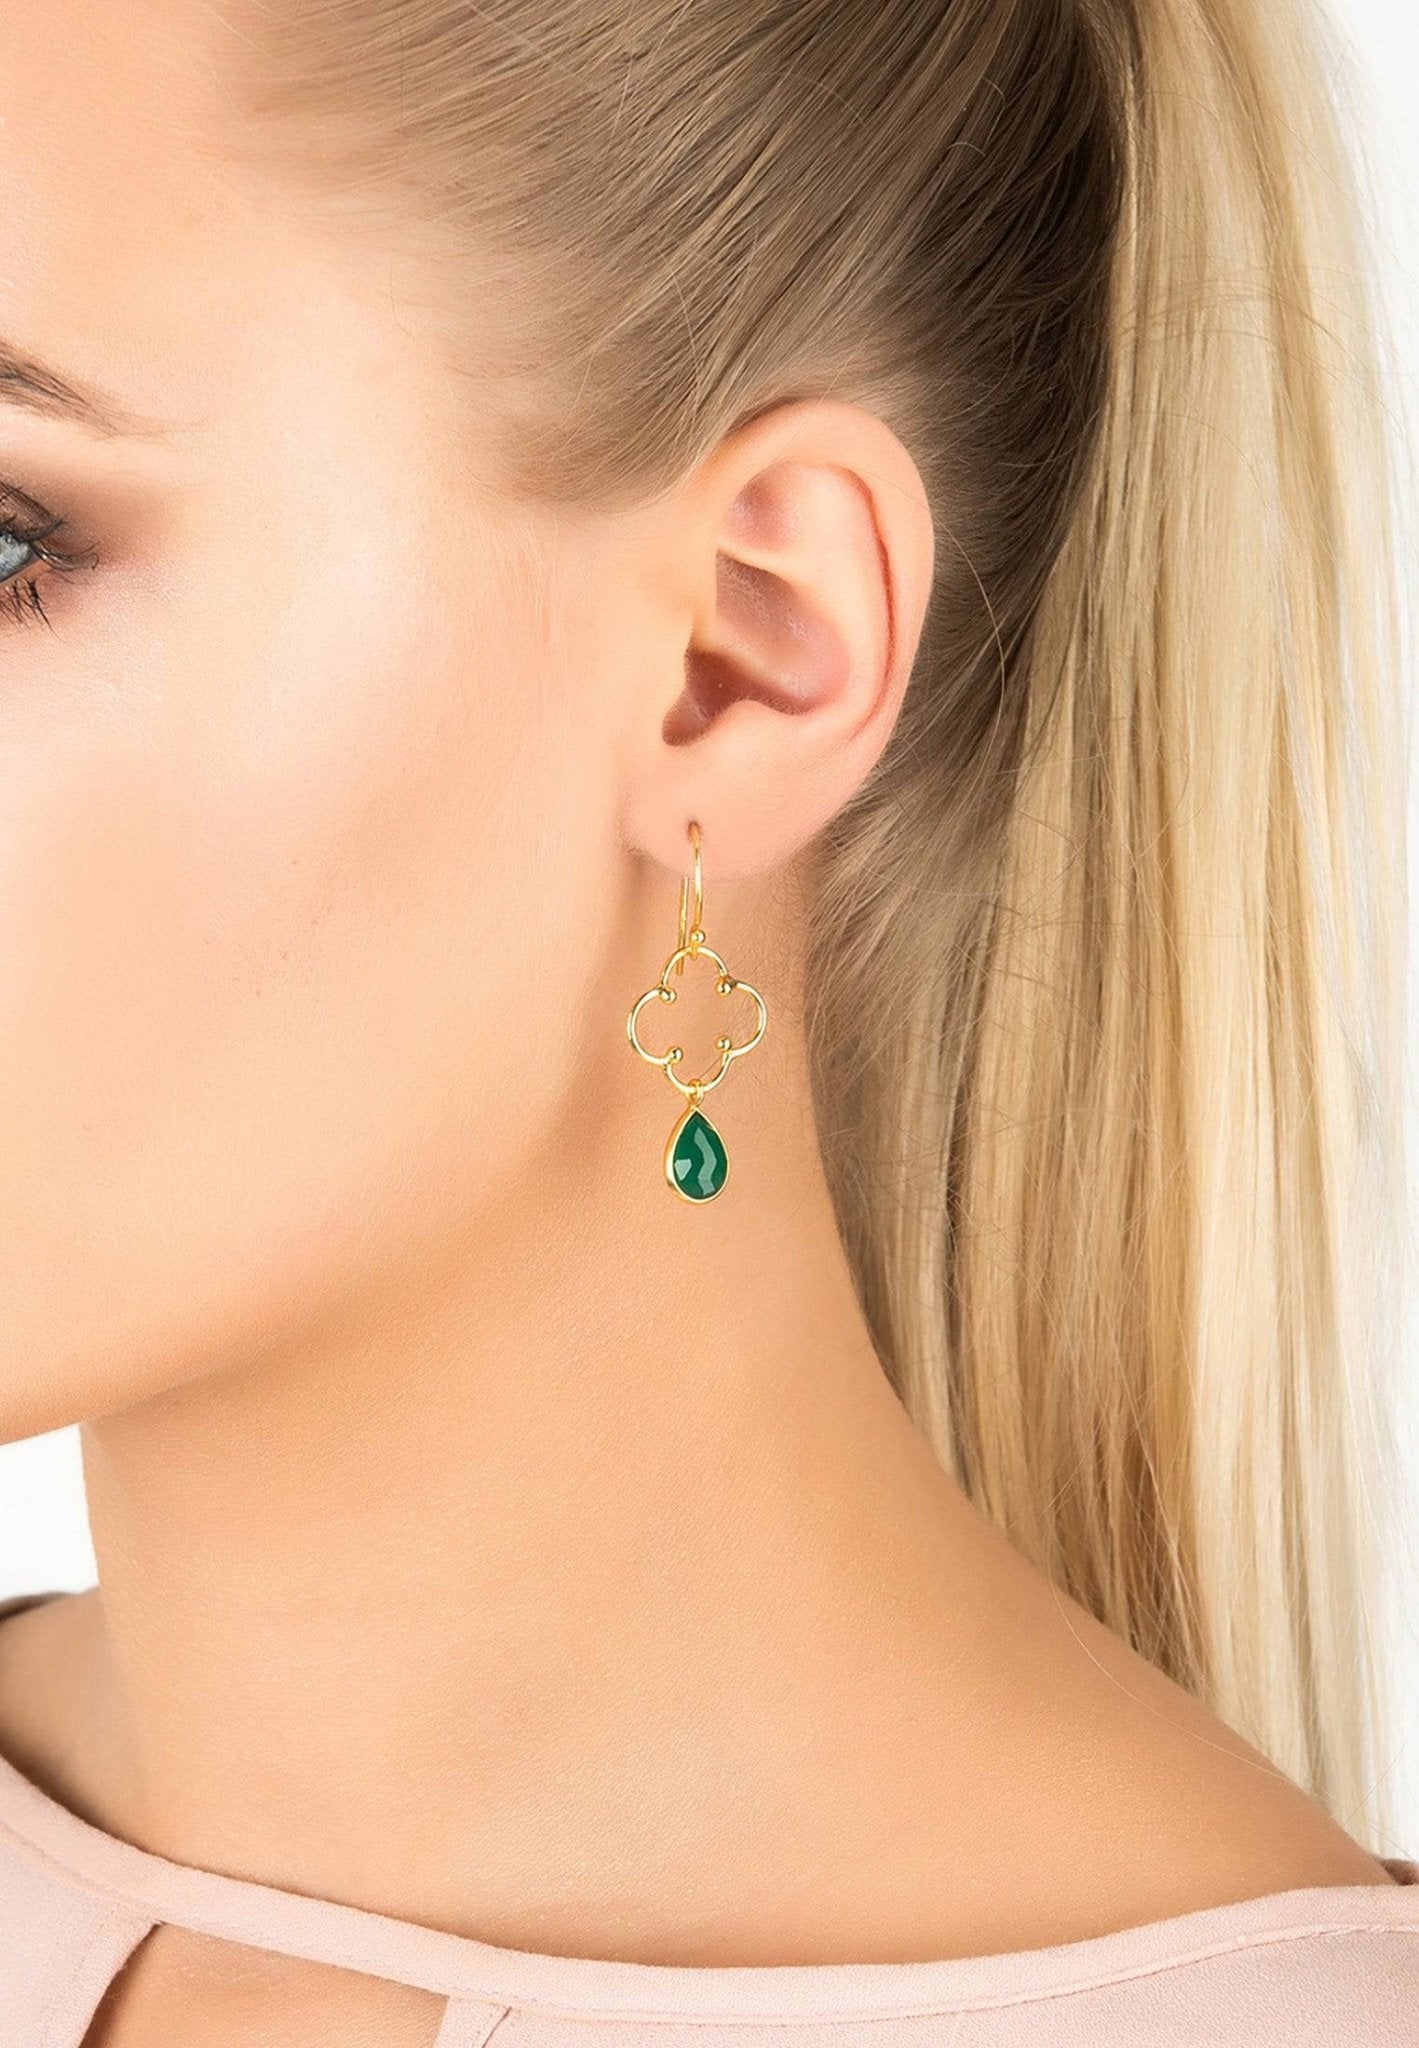 Open Clover Gemstone Drop Earrings Gold Green Onyx - LATELITA Earrings